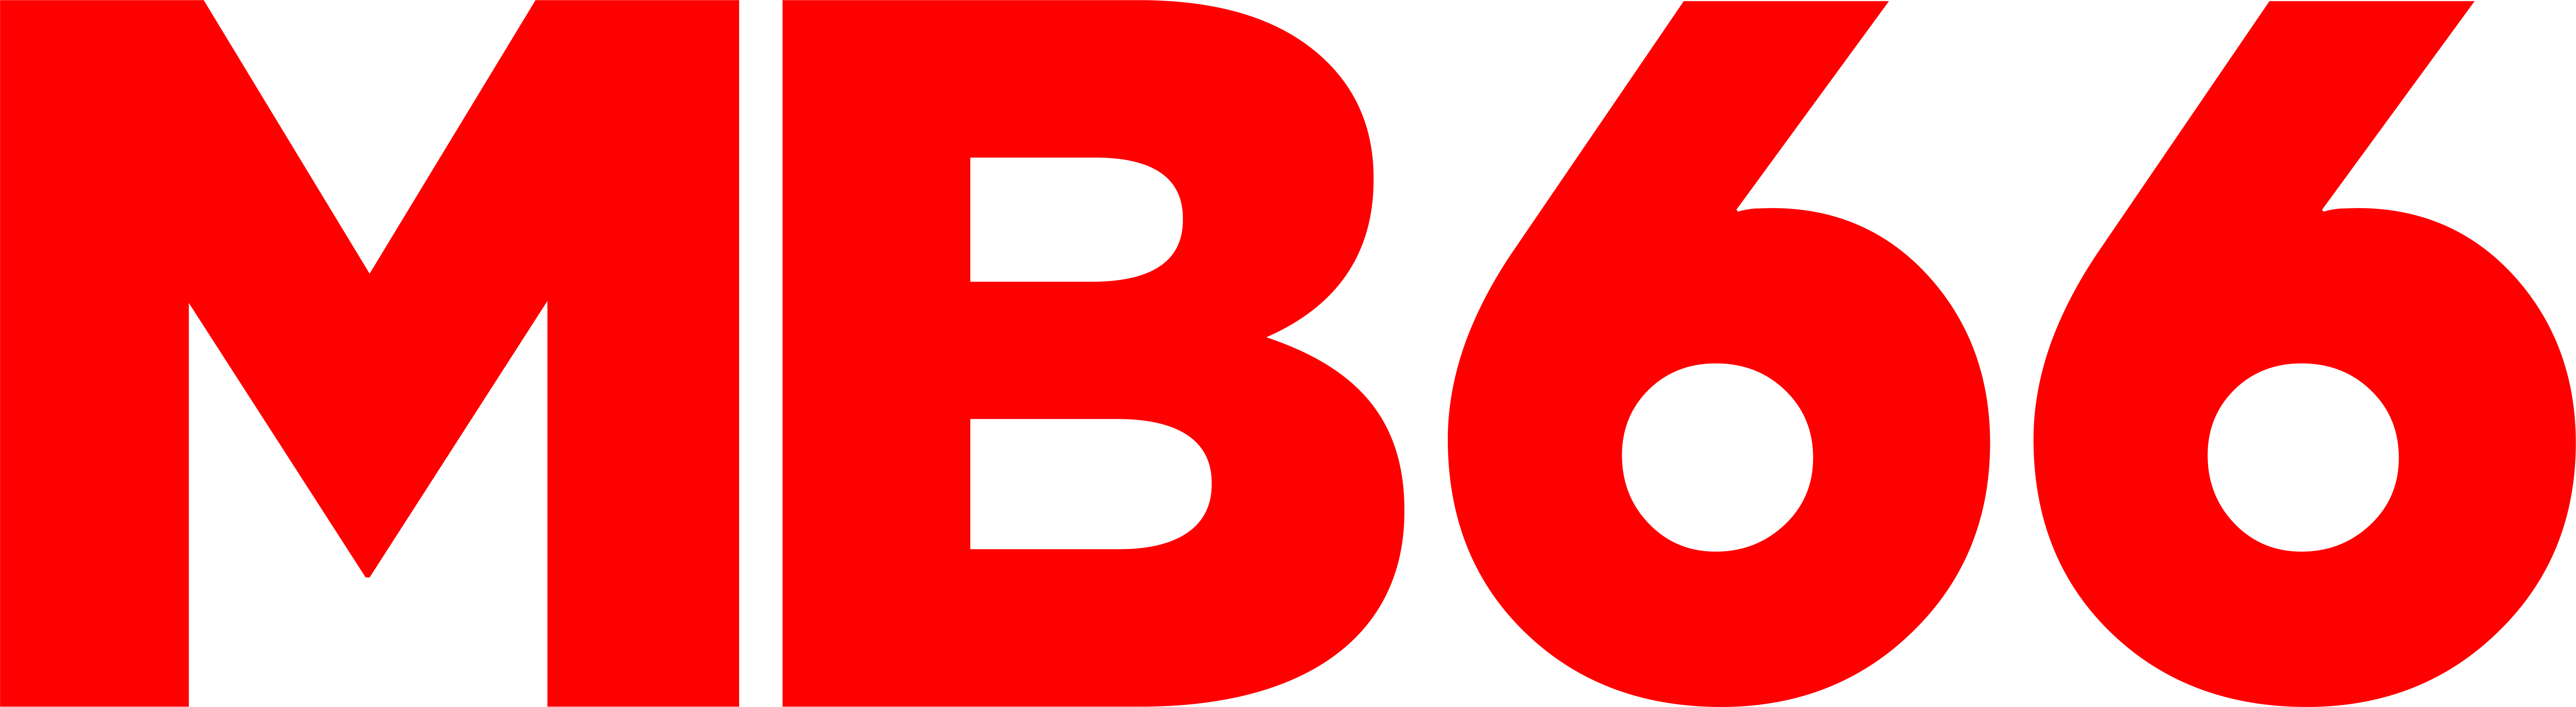 Logo Mb66 không nền